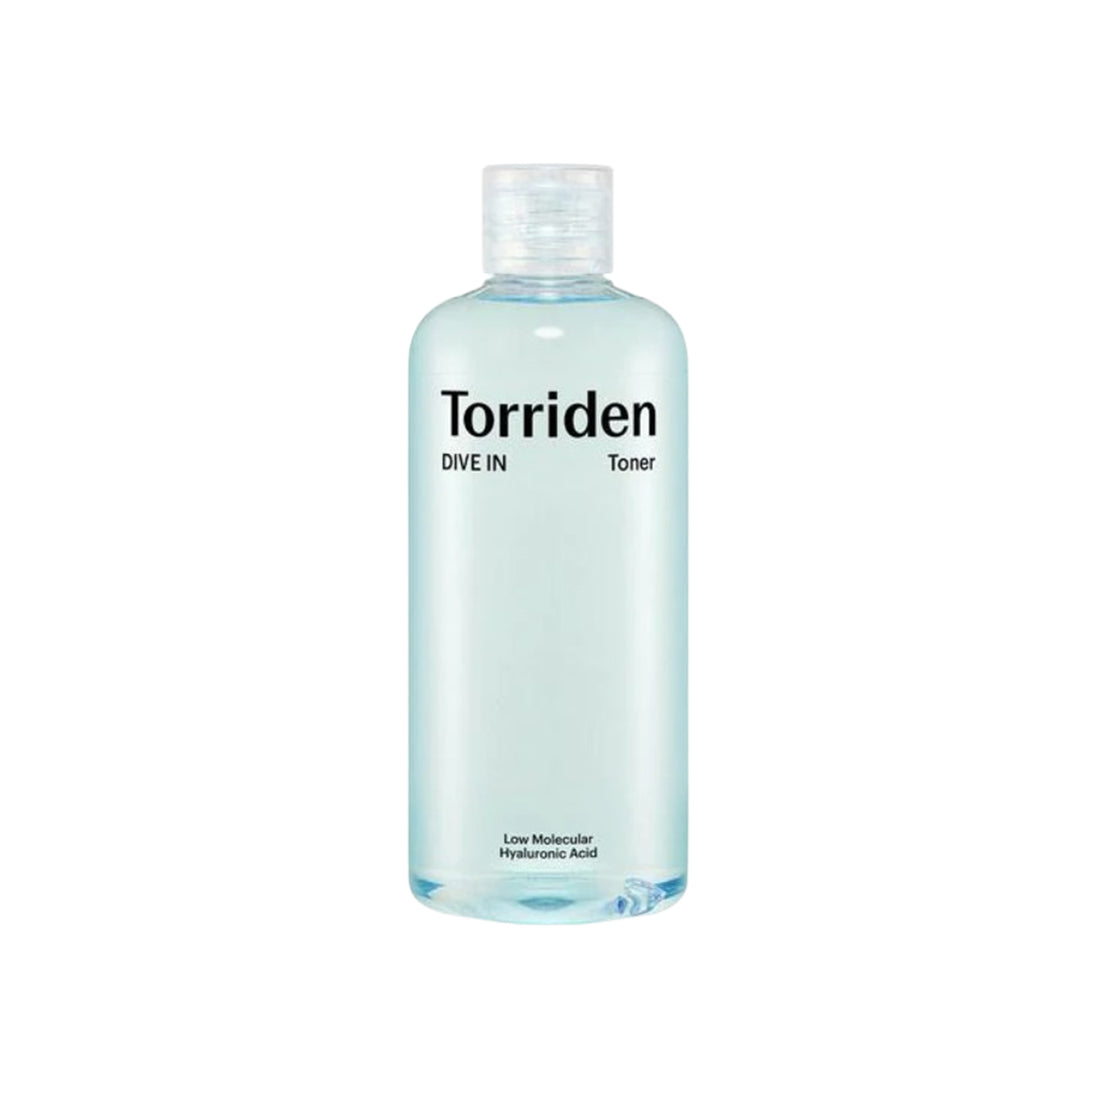 Torriden Dive In Low Molecular Hyaluronic Acid Toner